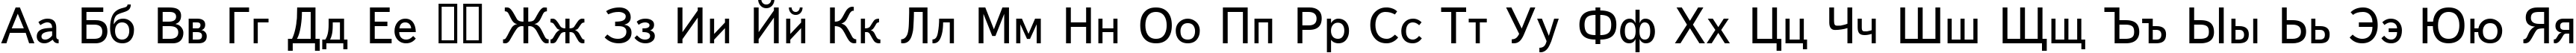 Пример написания русского алфавита шрифтом Text Book